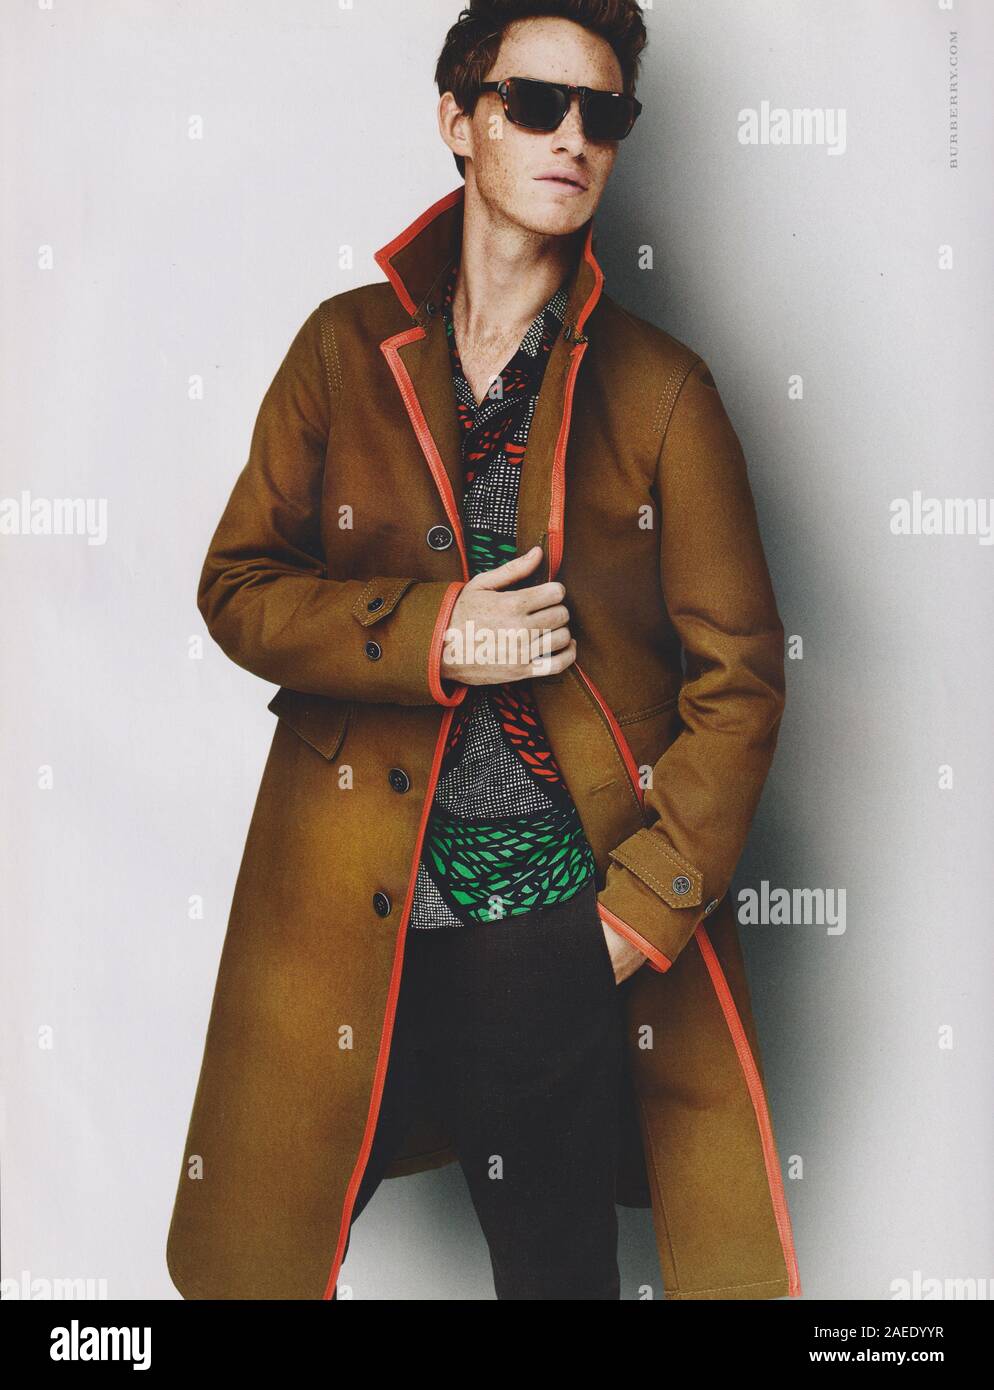 Poster pubblicitari Burberry fashion house con Eddie Redmayne in magazzino carta dal 2012 anno, pubblicità creative Burberry annuncio da 2010s Foto Stock